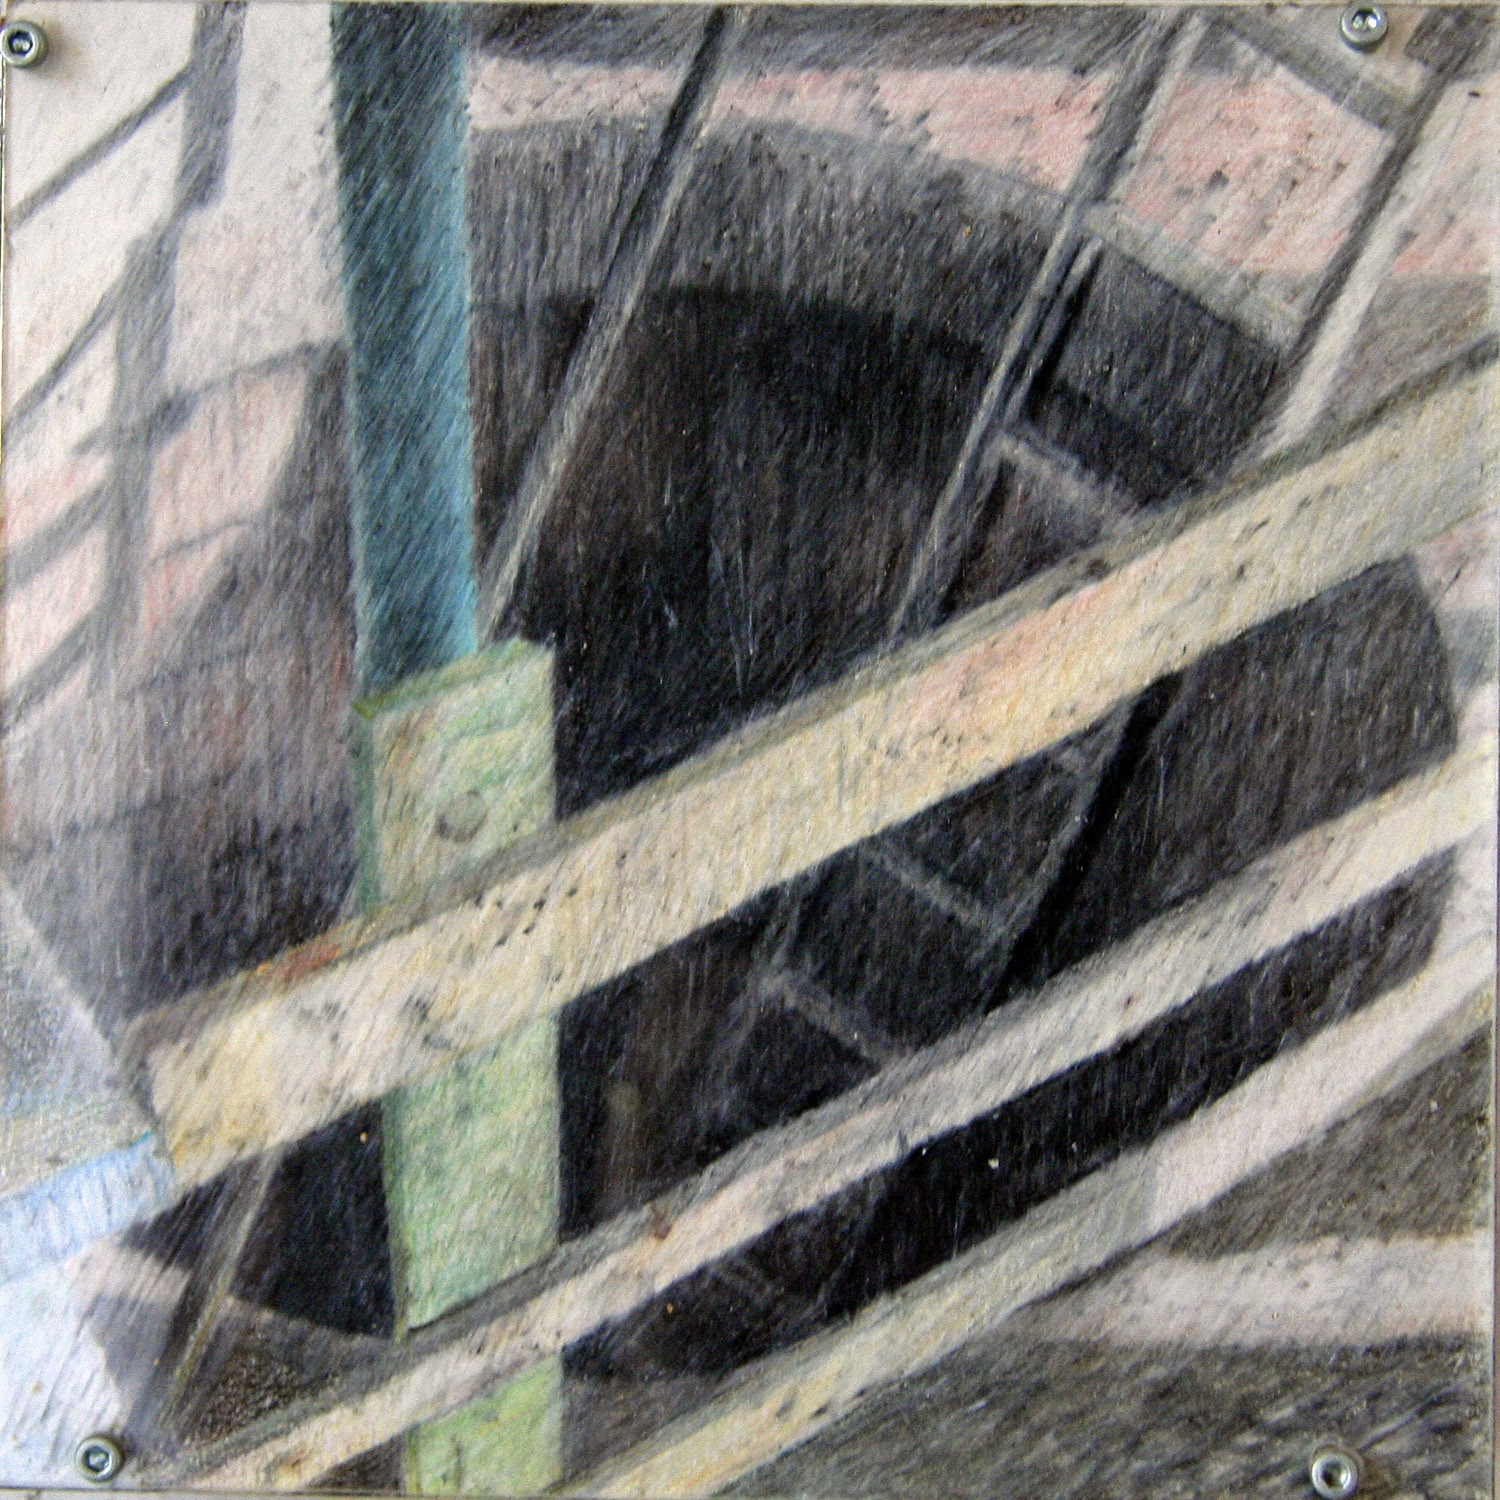 Nestbau, Objekt zugeklappt, 1997, Buntstift, Pitkreide, Ölkreide auf Papier, Mdf-Platte mit Scharnieren, 17x17 cm